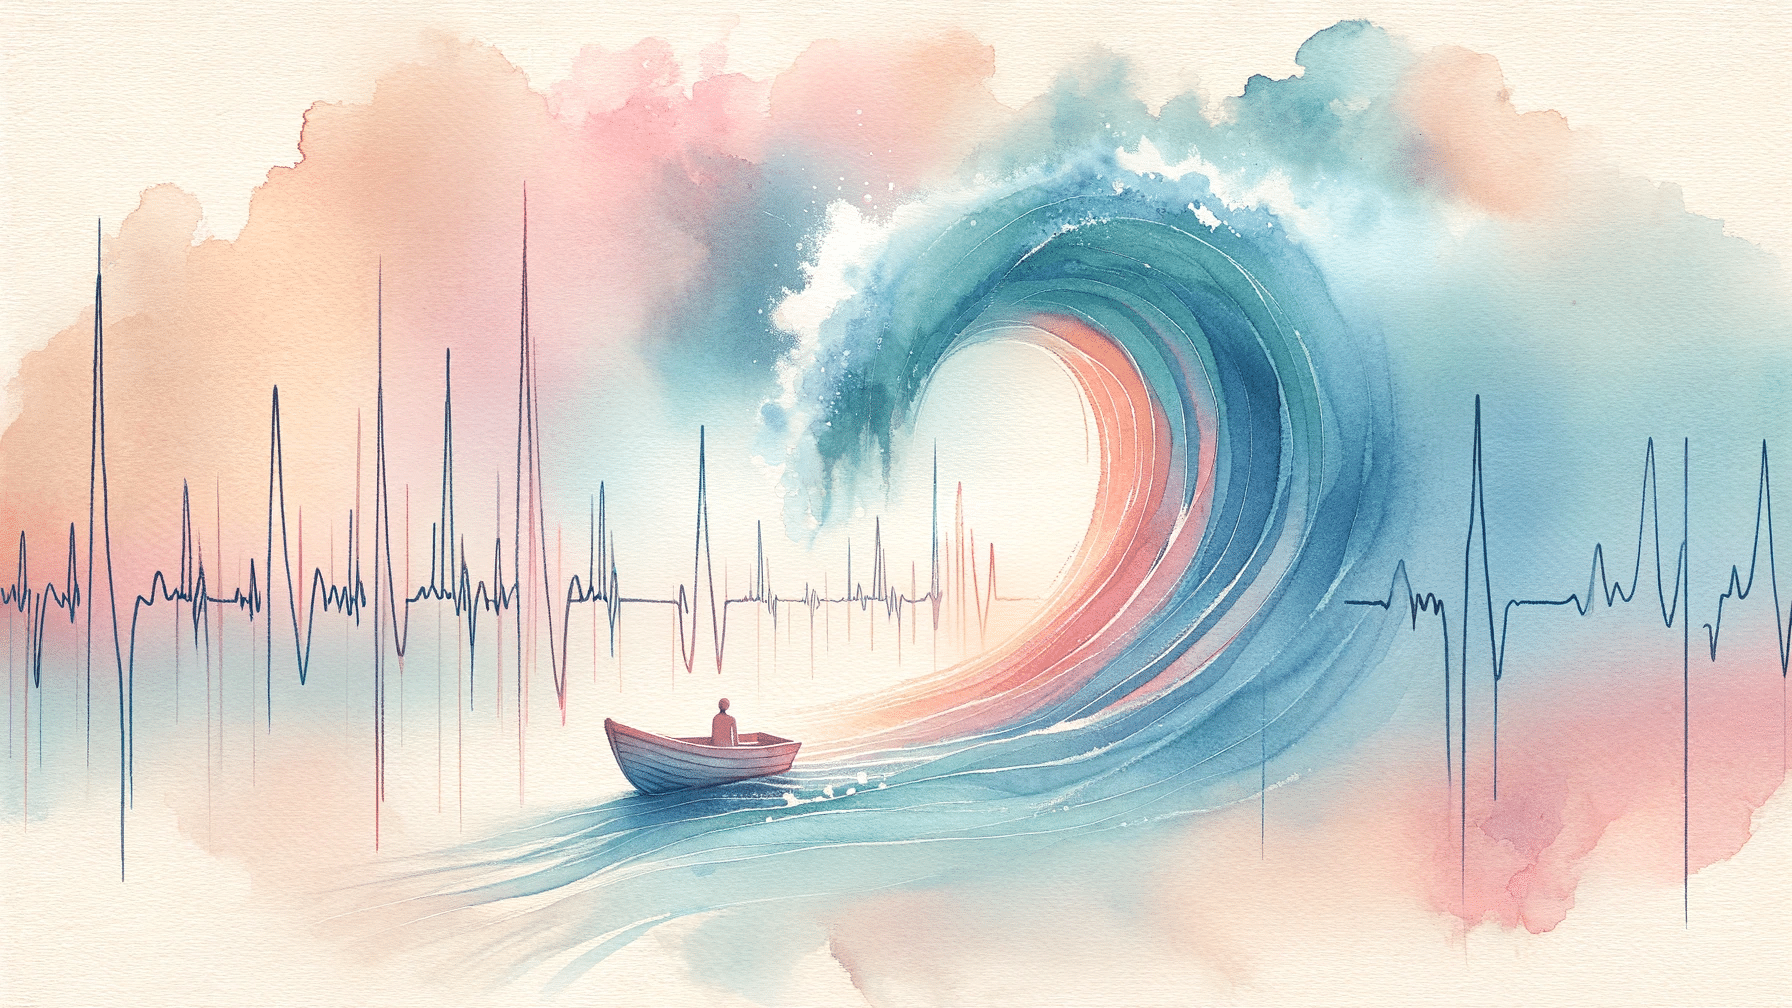 Aquarell Interpretation von Panikattacken - Boot und Herzschlagkurve, Wellen gehen hoch